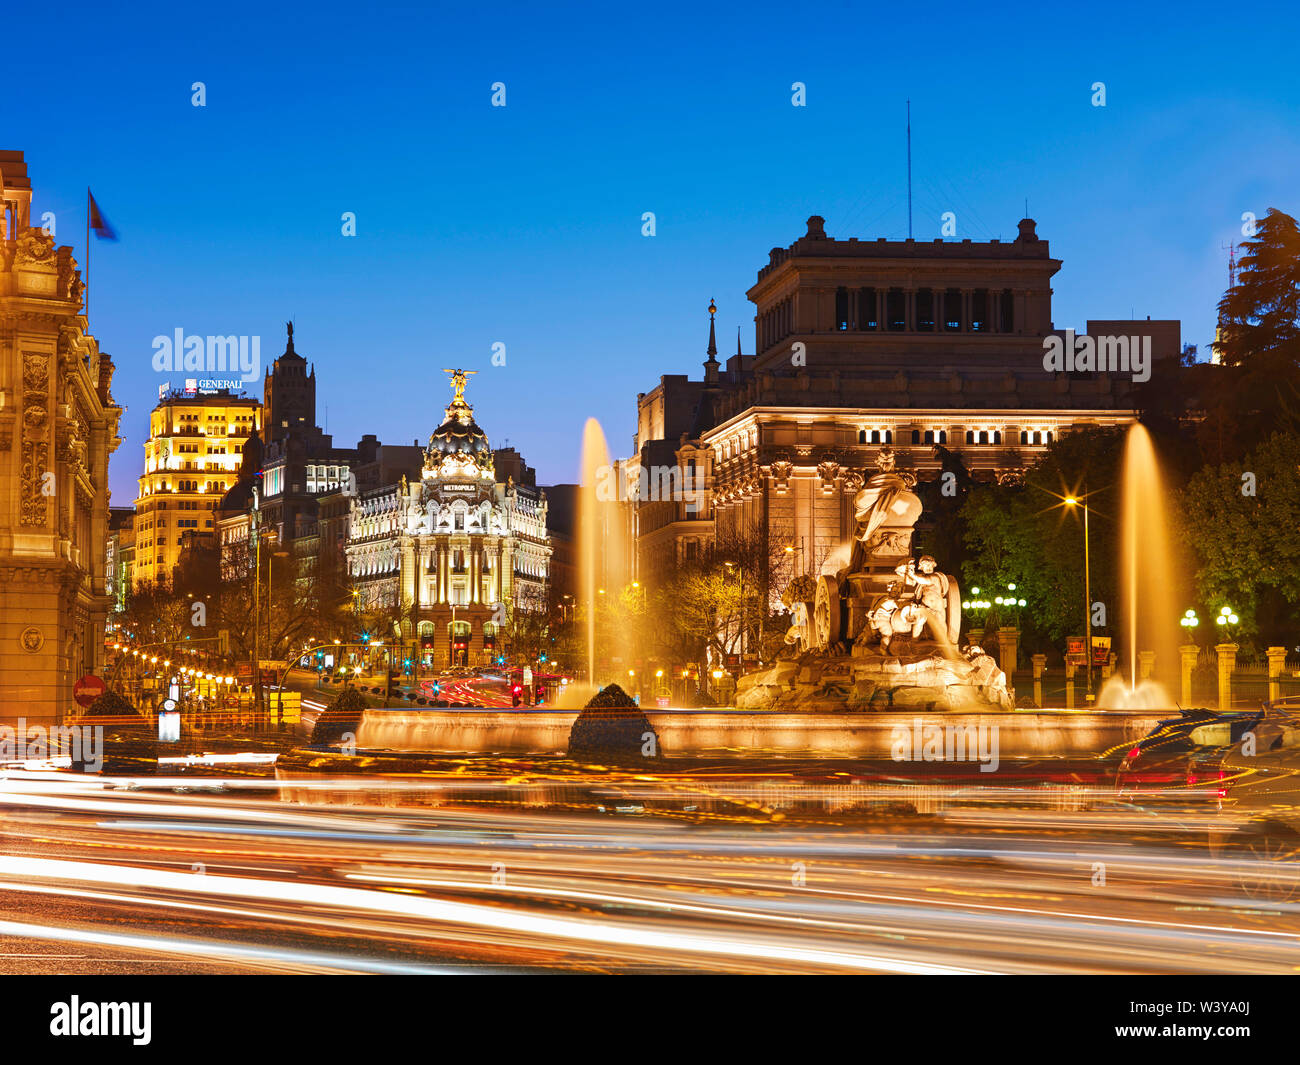 Spain, Madrid, Plaza de Cibeles illuminated at night Stock Photo